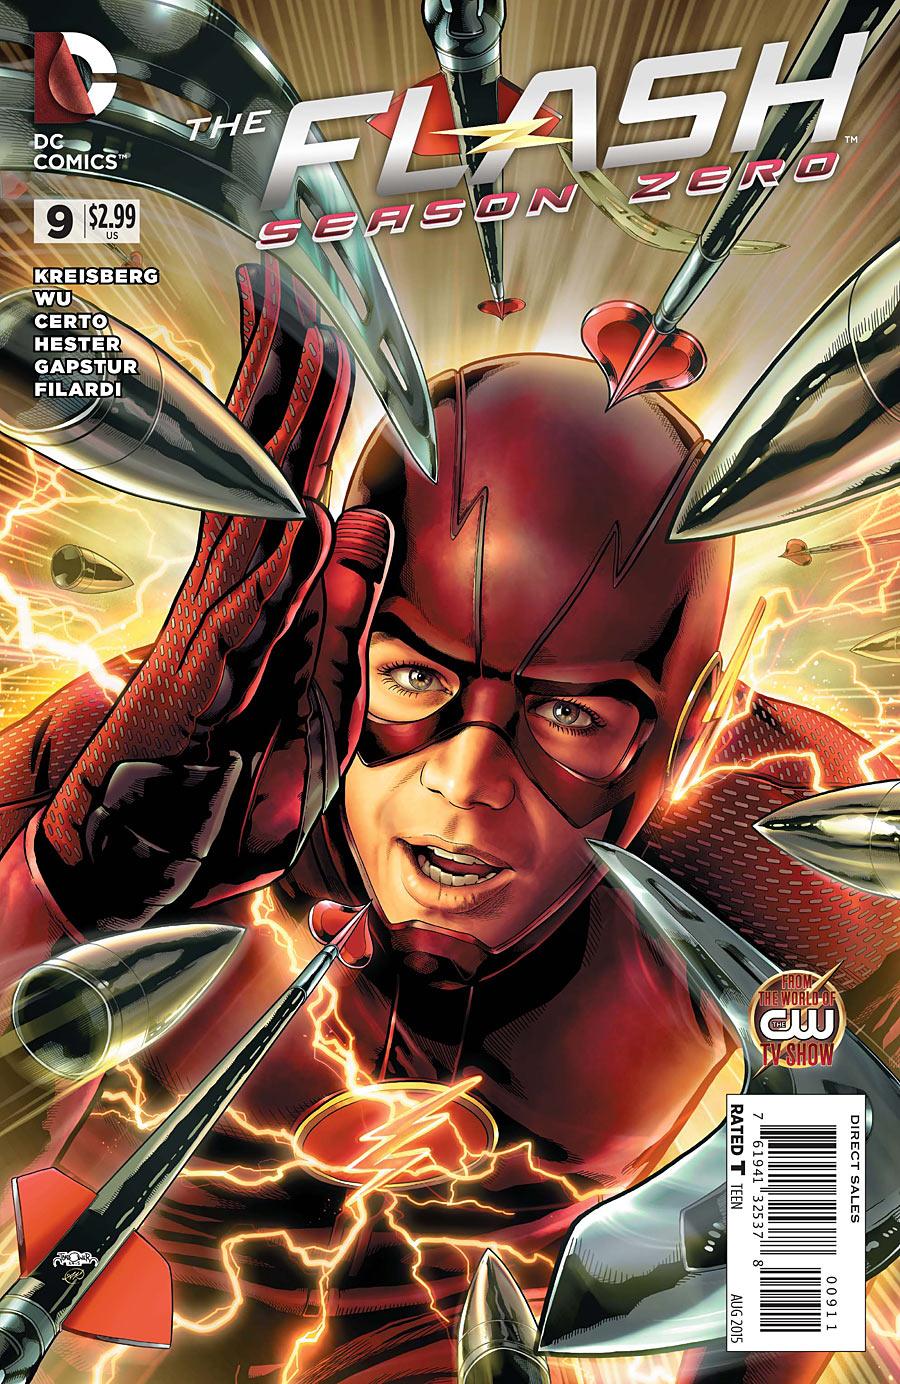 The Flash: Season Zero Vol. 1 #9